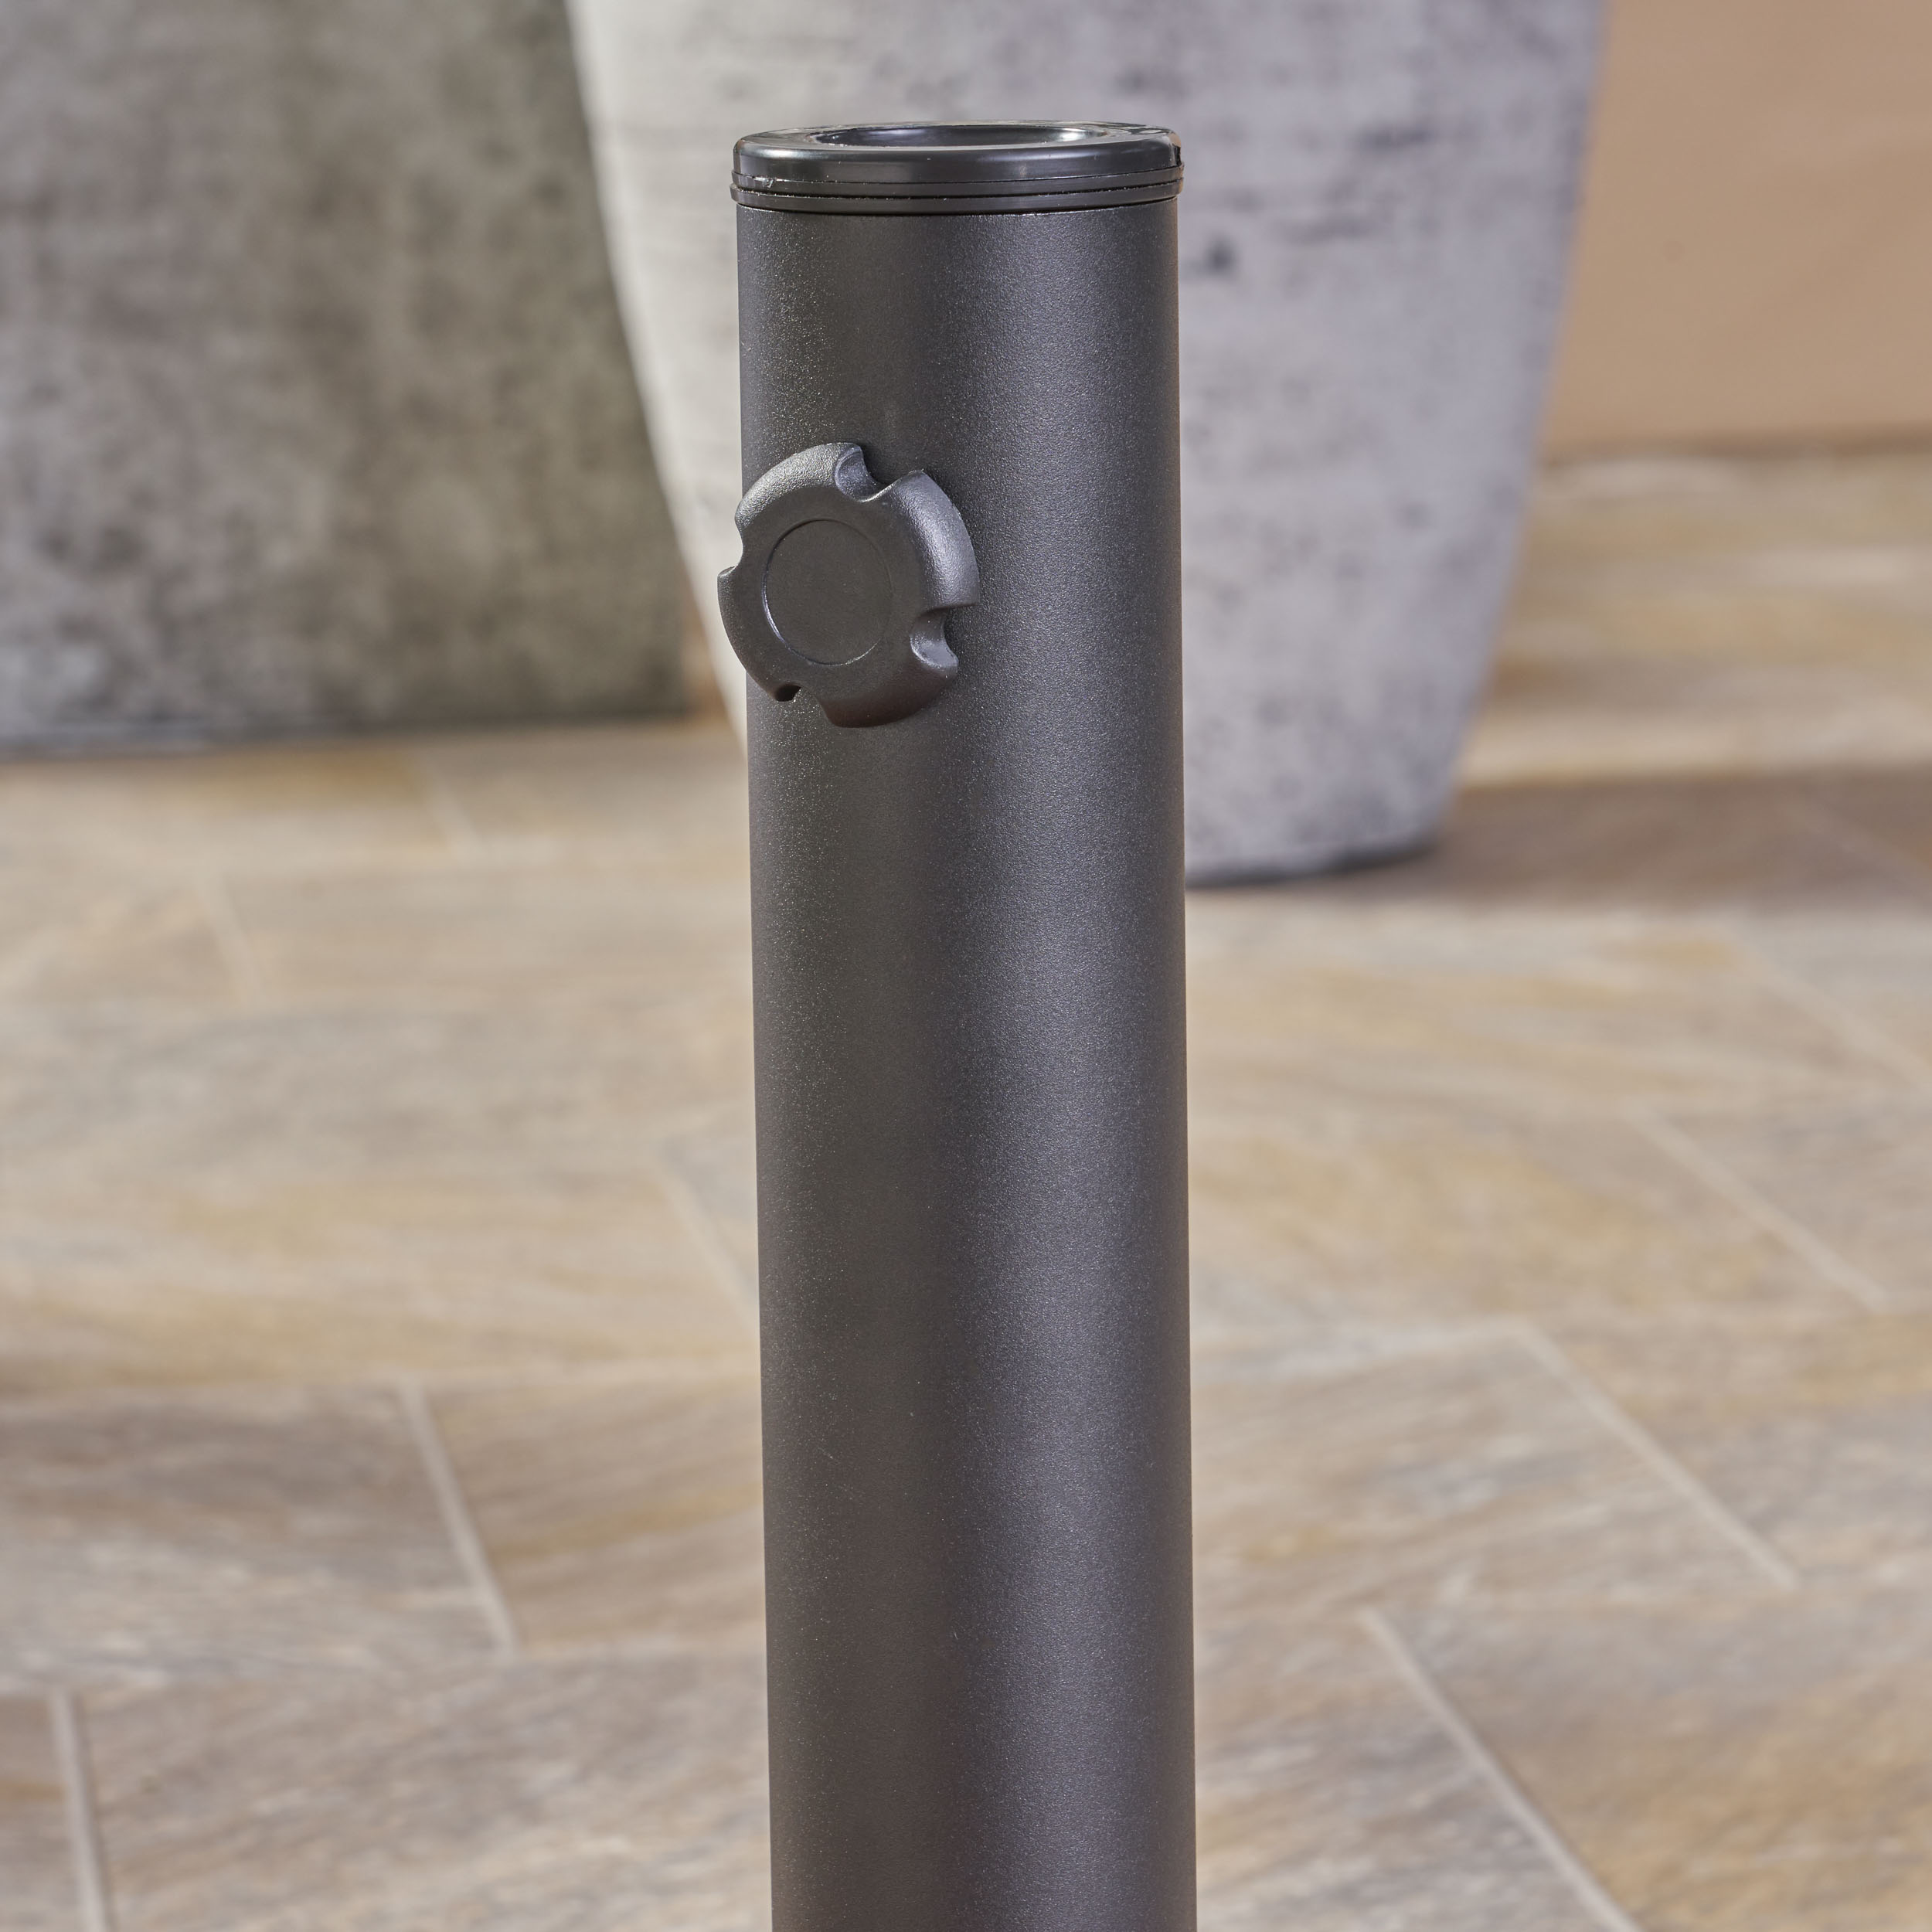 Outdoor 59.5lb Concrete Circular Umbrella Base with Aluminum Collar, Teal - image 5 of 8